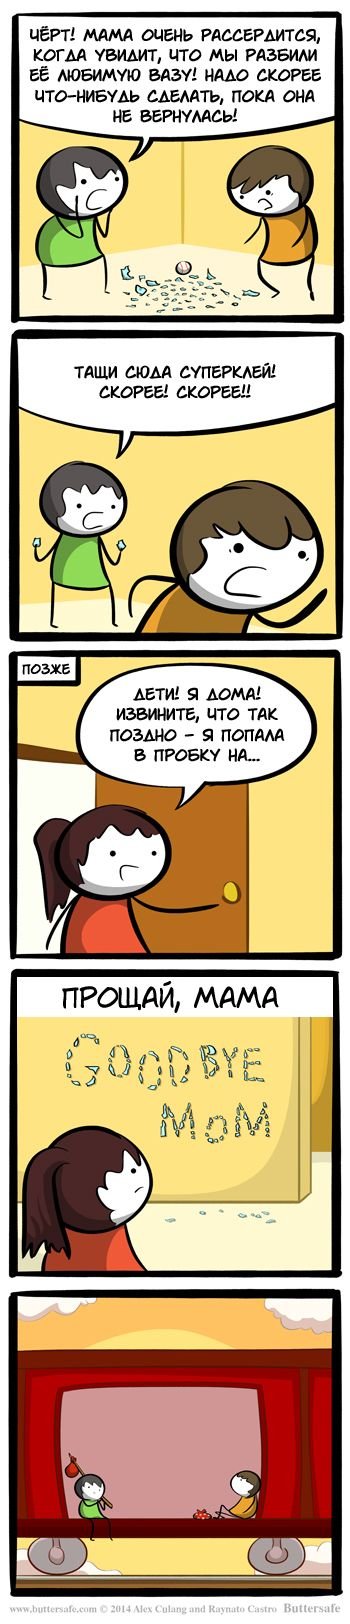 Свежих комиксов сборник (17 шт)